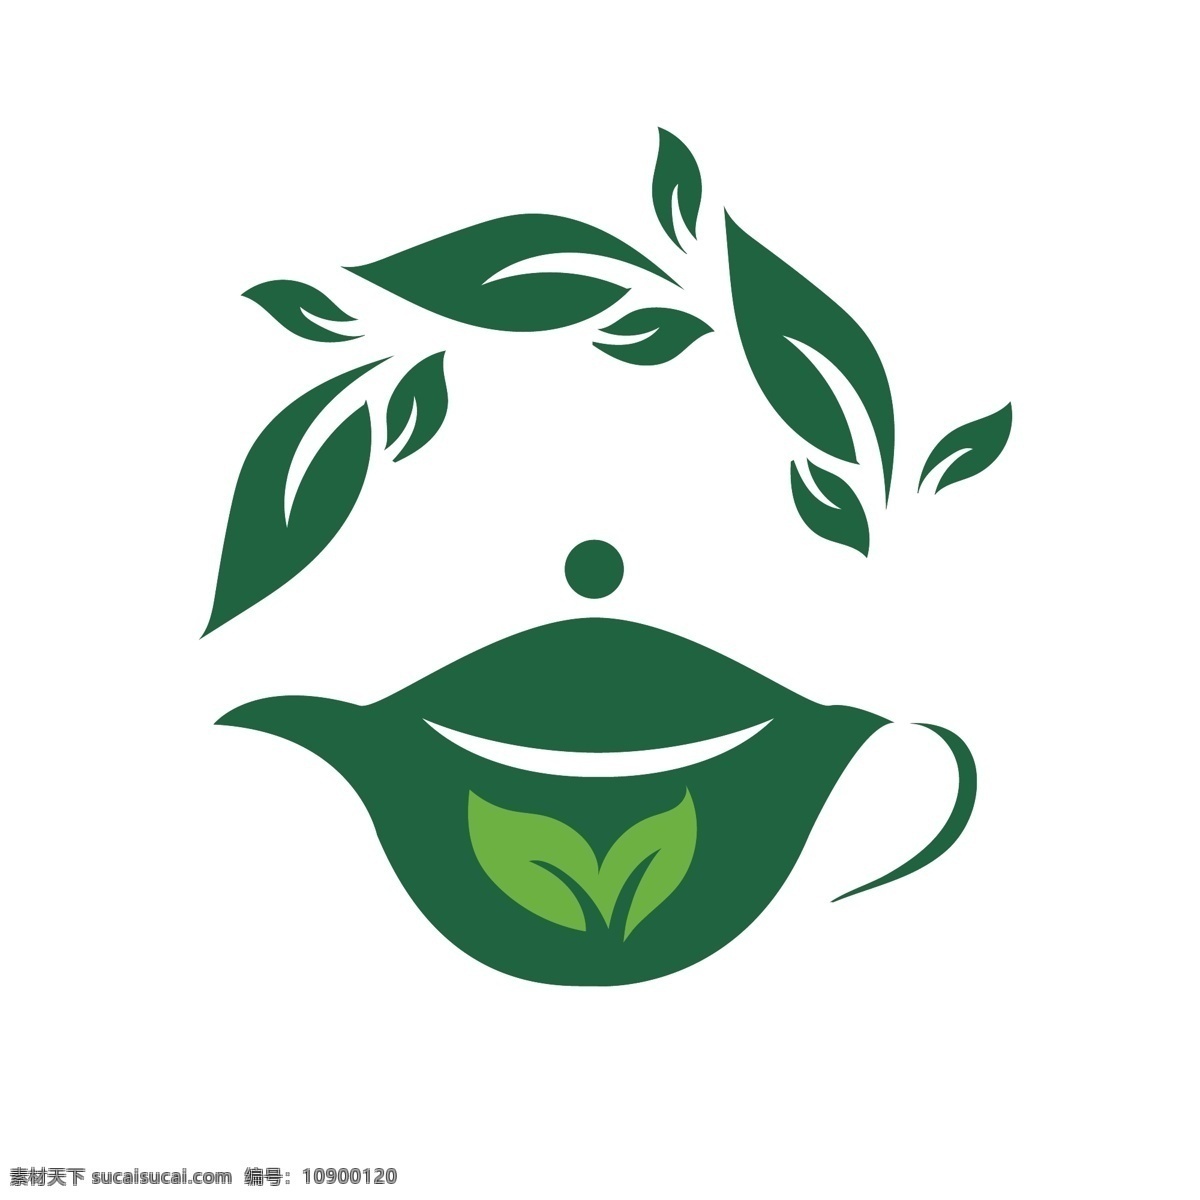 小茶壶 茶壶 绿色 茶叶 茶 壶 标志图标 公共标识标志